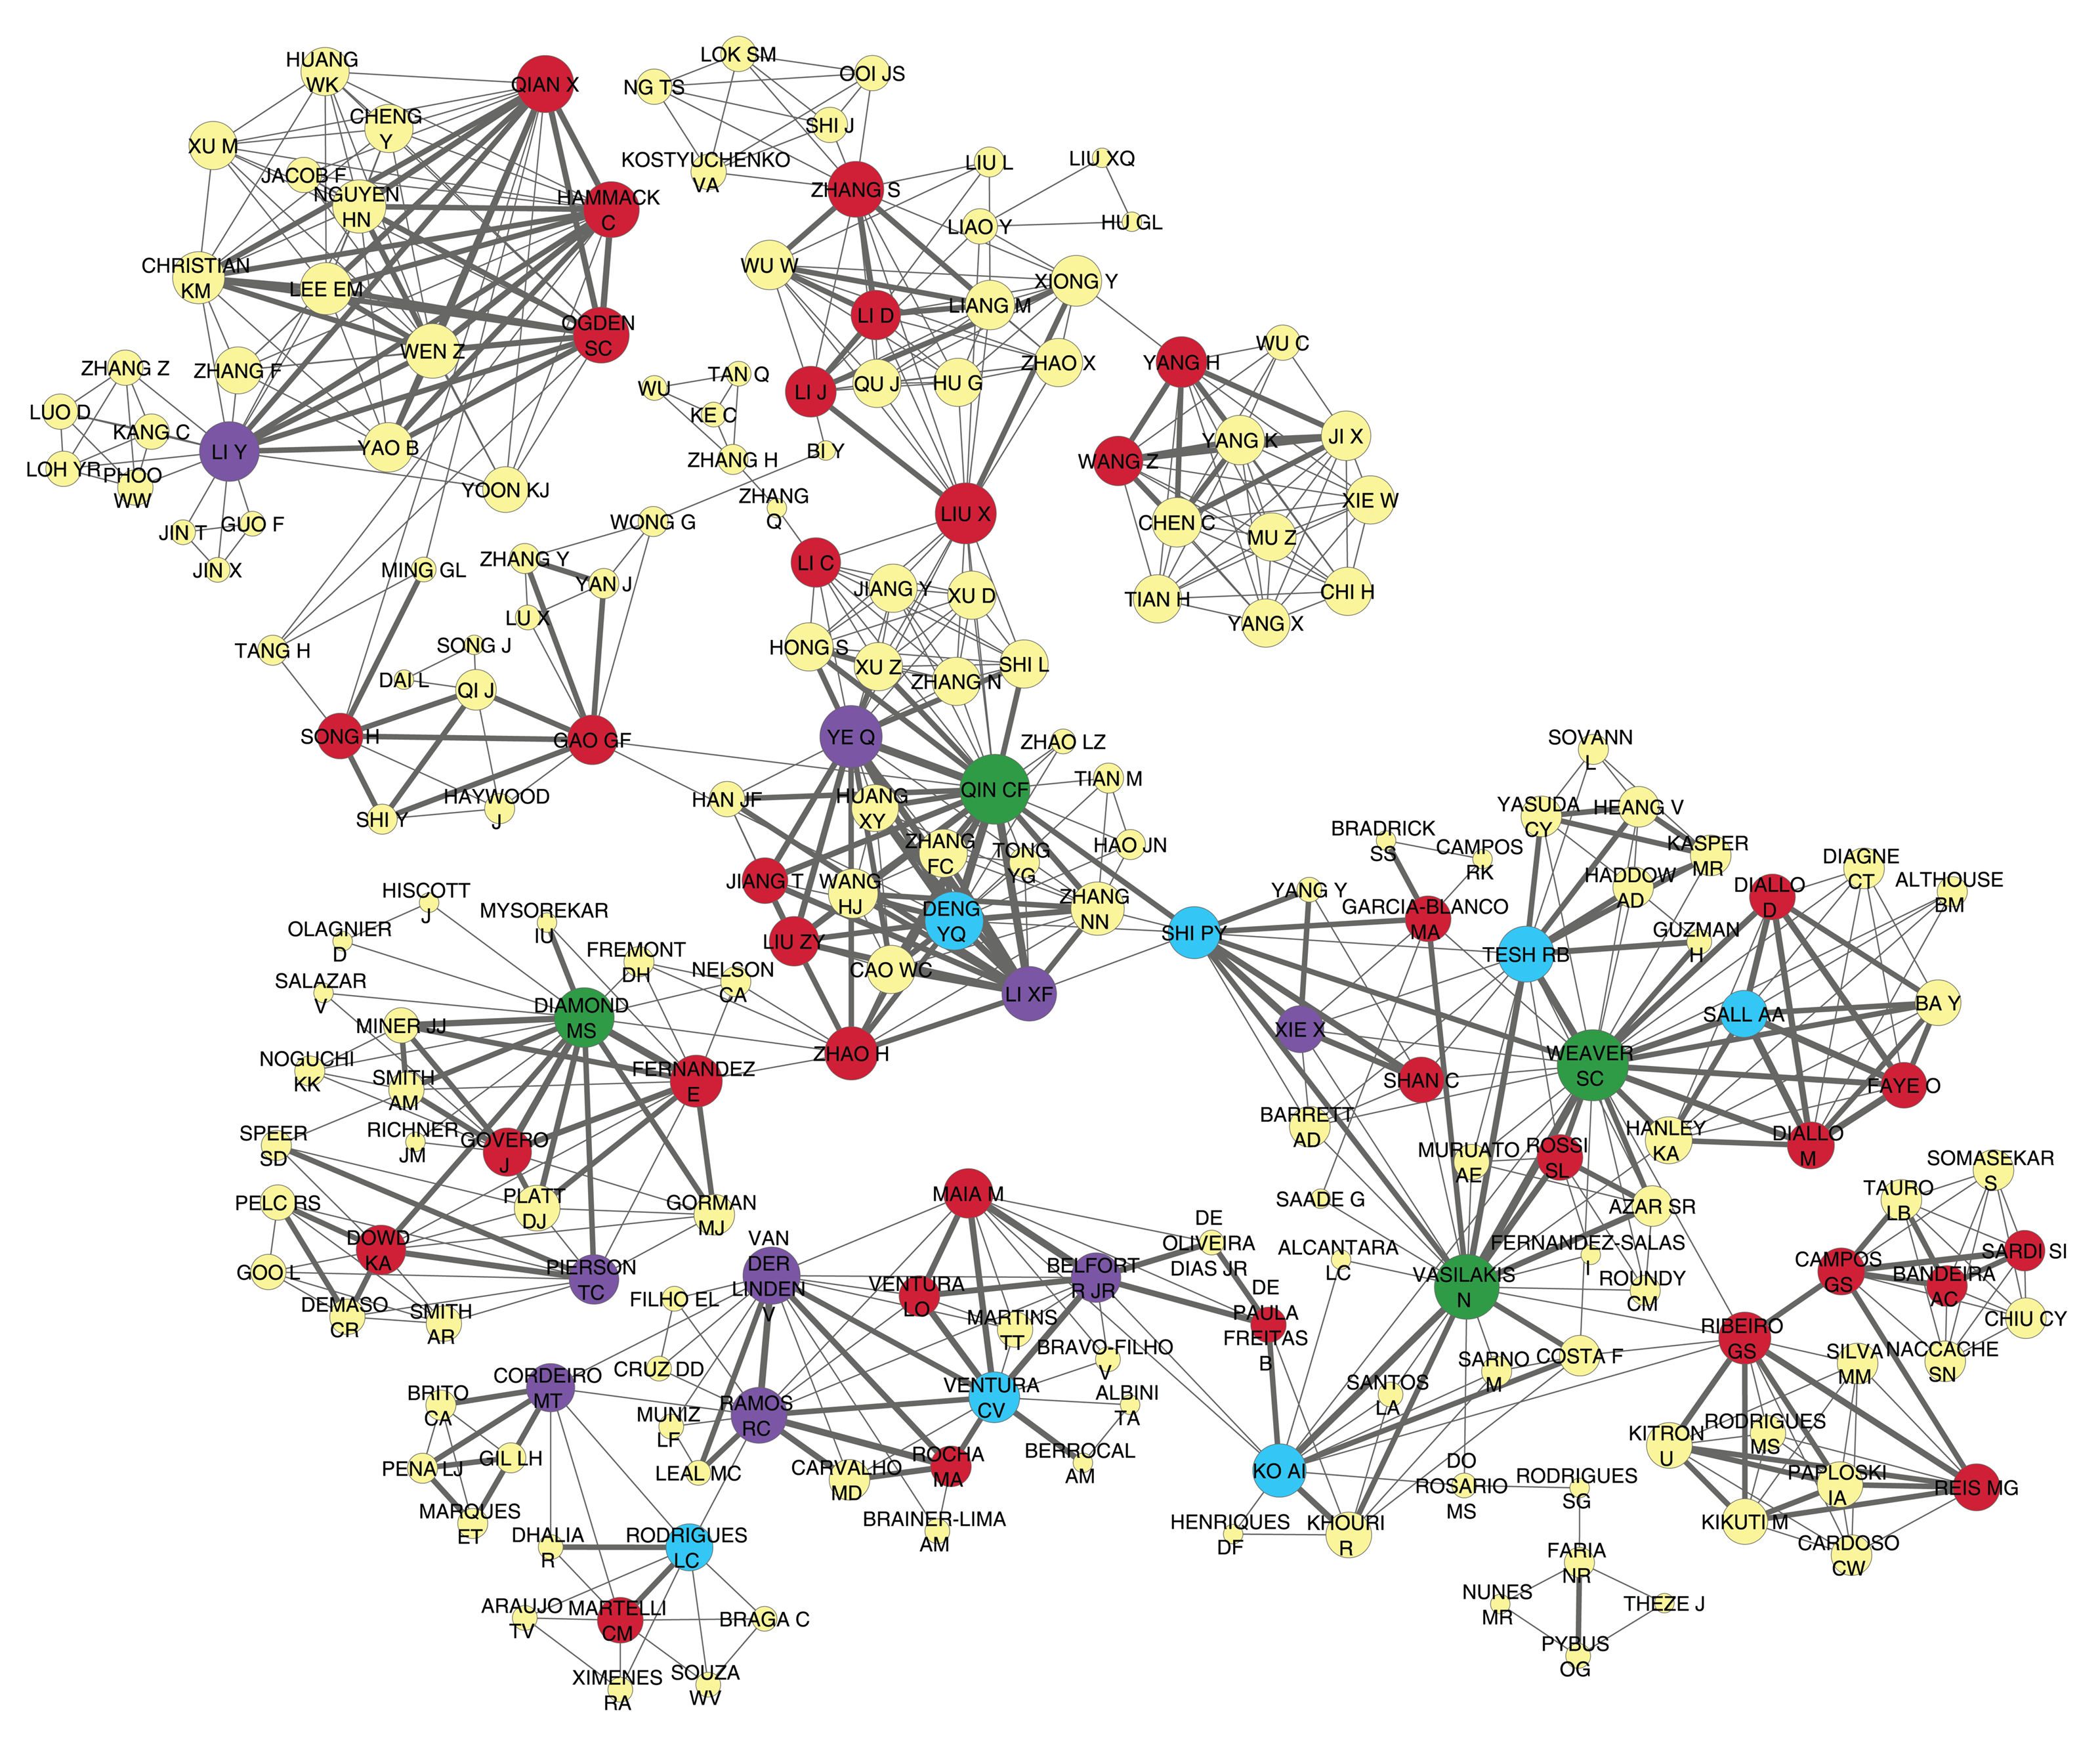 Ilustração de redes de colaboração de pesquisasobre Zika, formada por círculos coloridos conectados por linhas pretas. Cada círculo representa um pesquisador e os agrupamentos se encontram ligados em redes menores.